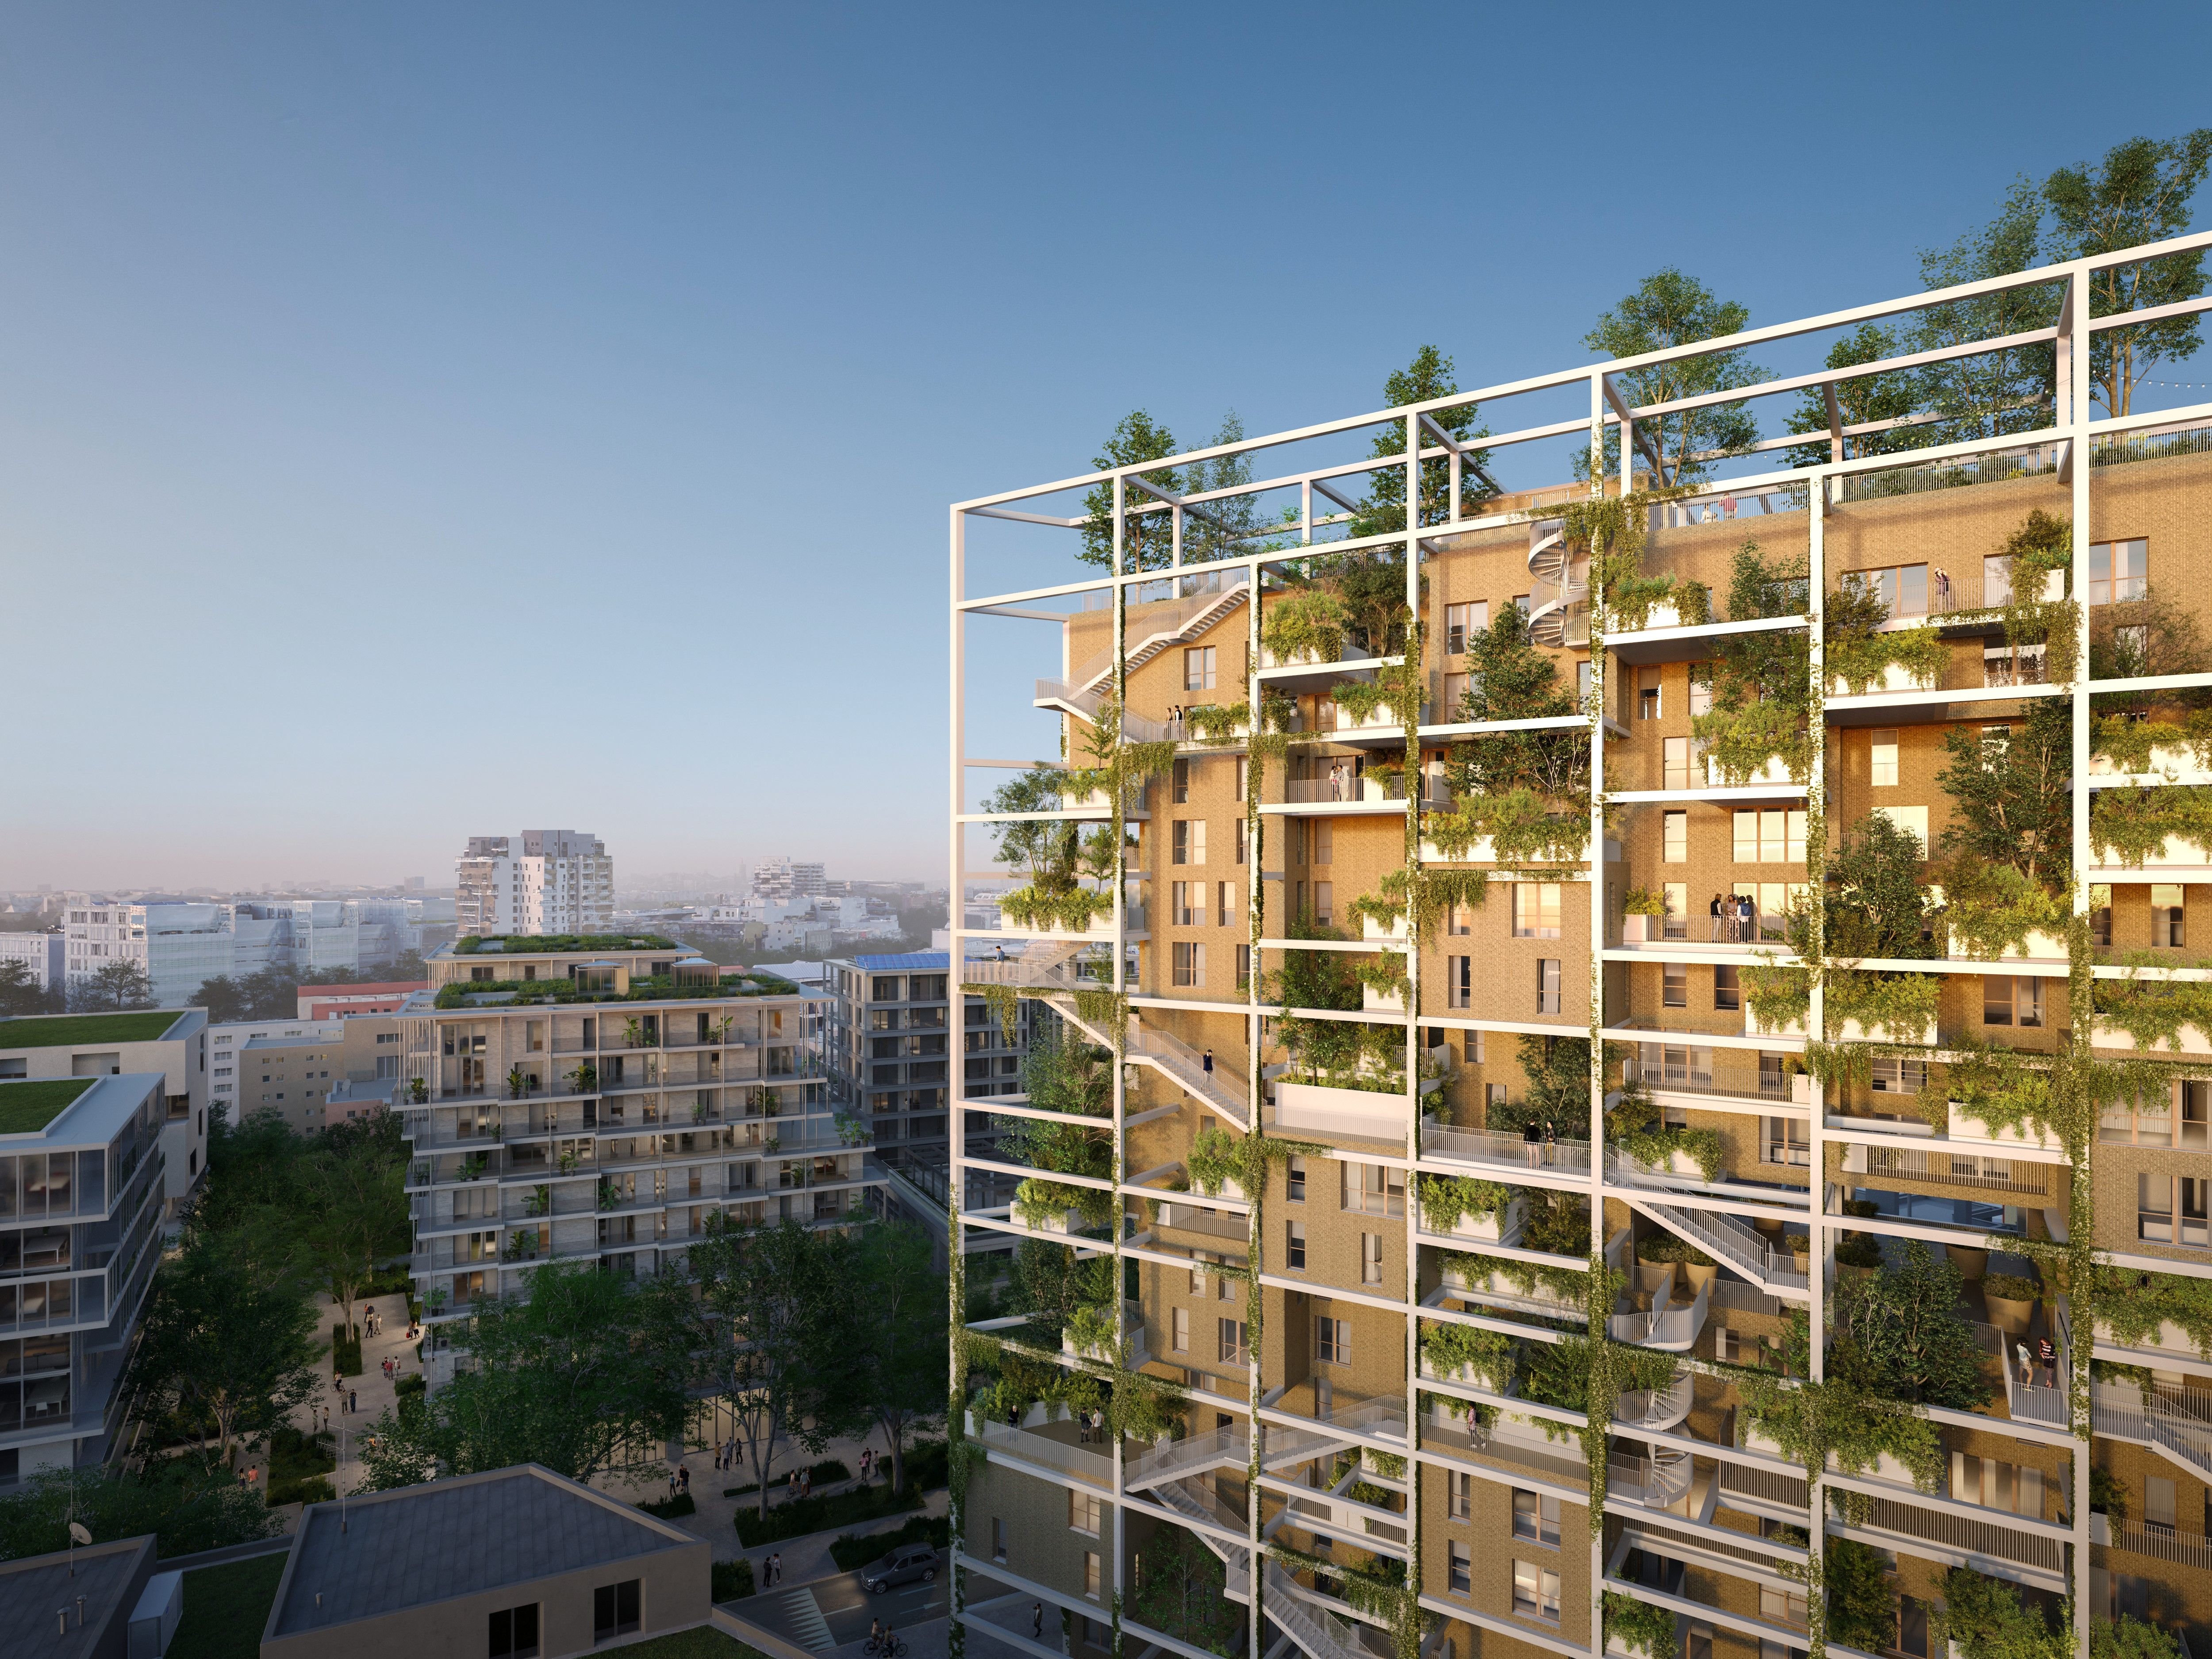 Le bâtiment de dix-huit étages disposera de 190 logements et 2 831 m² d’espaces extérieurs, dont 650 m2 en toit-terrasse accessible. Près de 400 arbres doivent y être plantés. Il aura aussi son potager et 37 nichoirs. MRDV